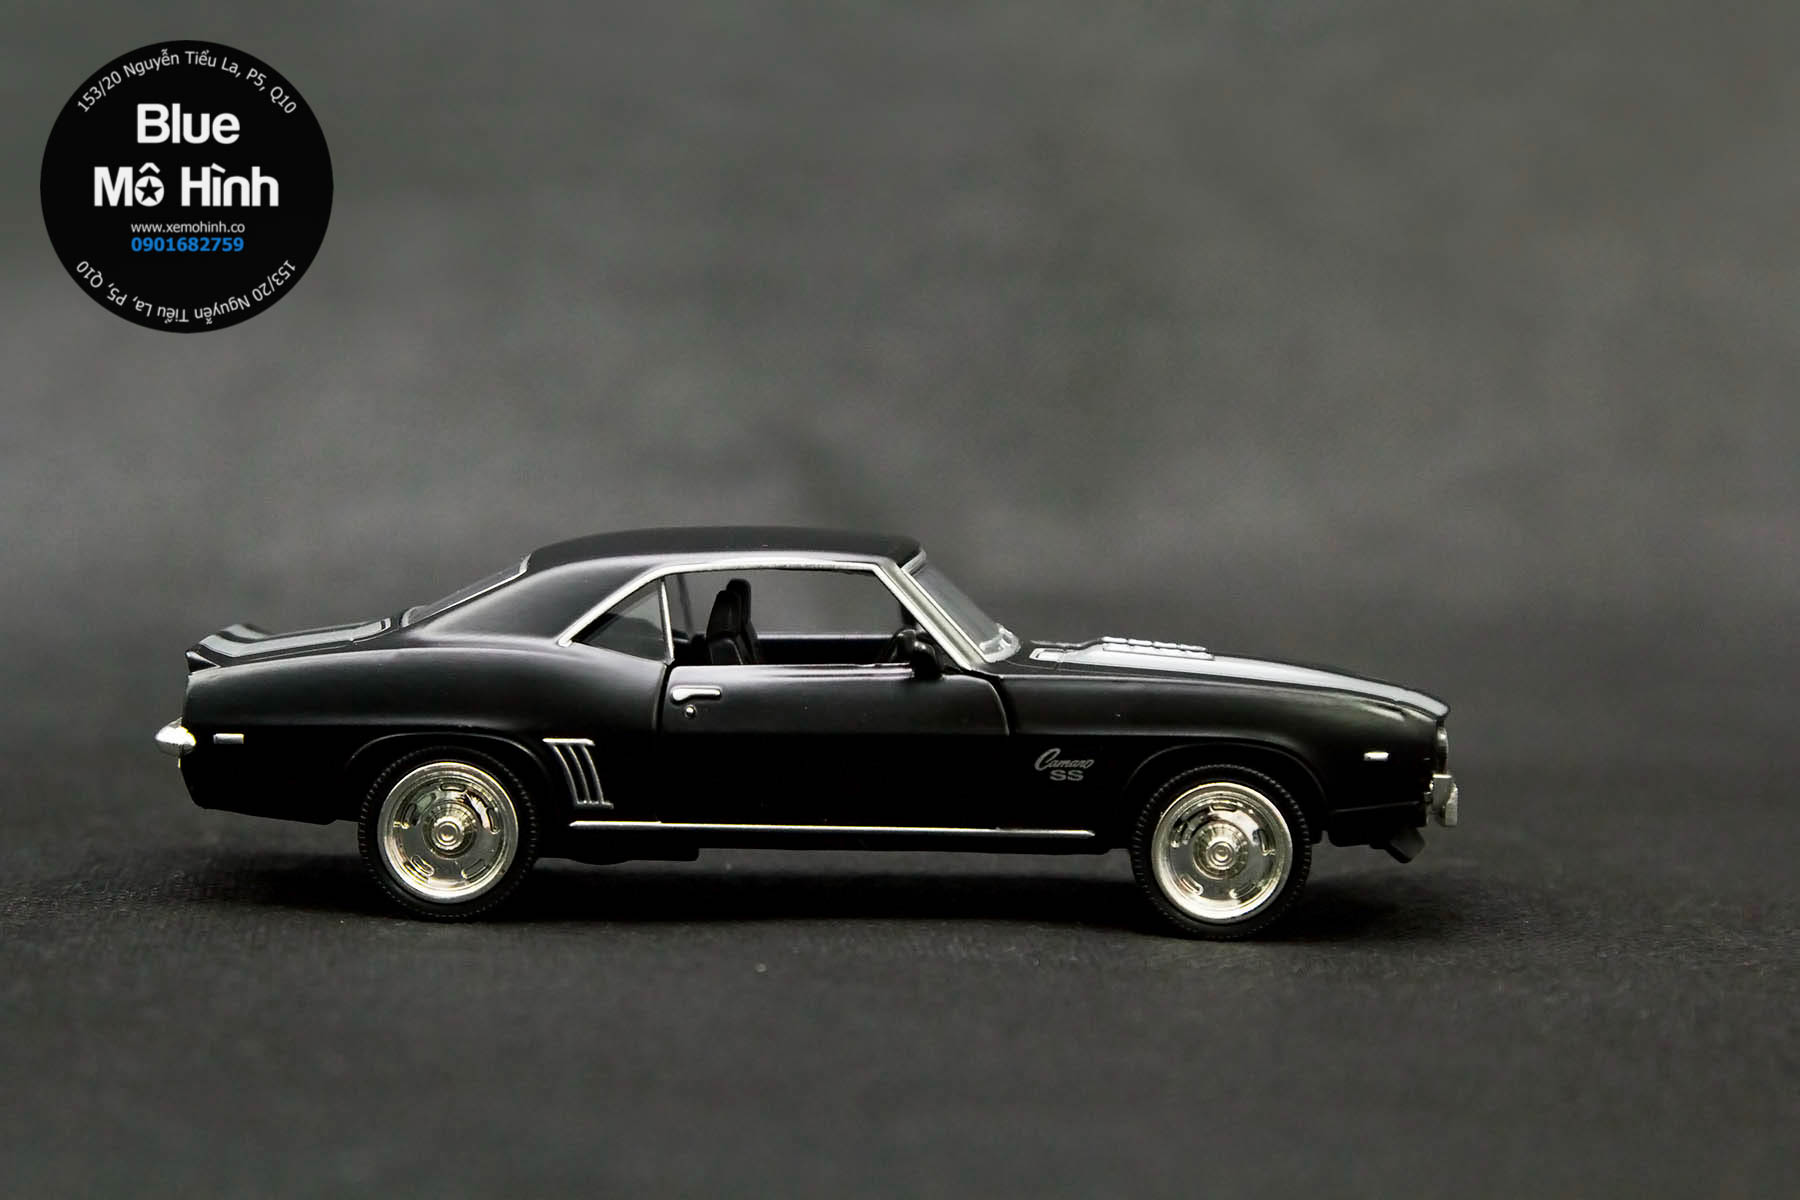 Blue mô hình | Xe mô hình Chevrolet Camaro SS 1969 tỷ lệ 1:36 